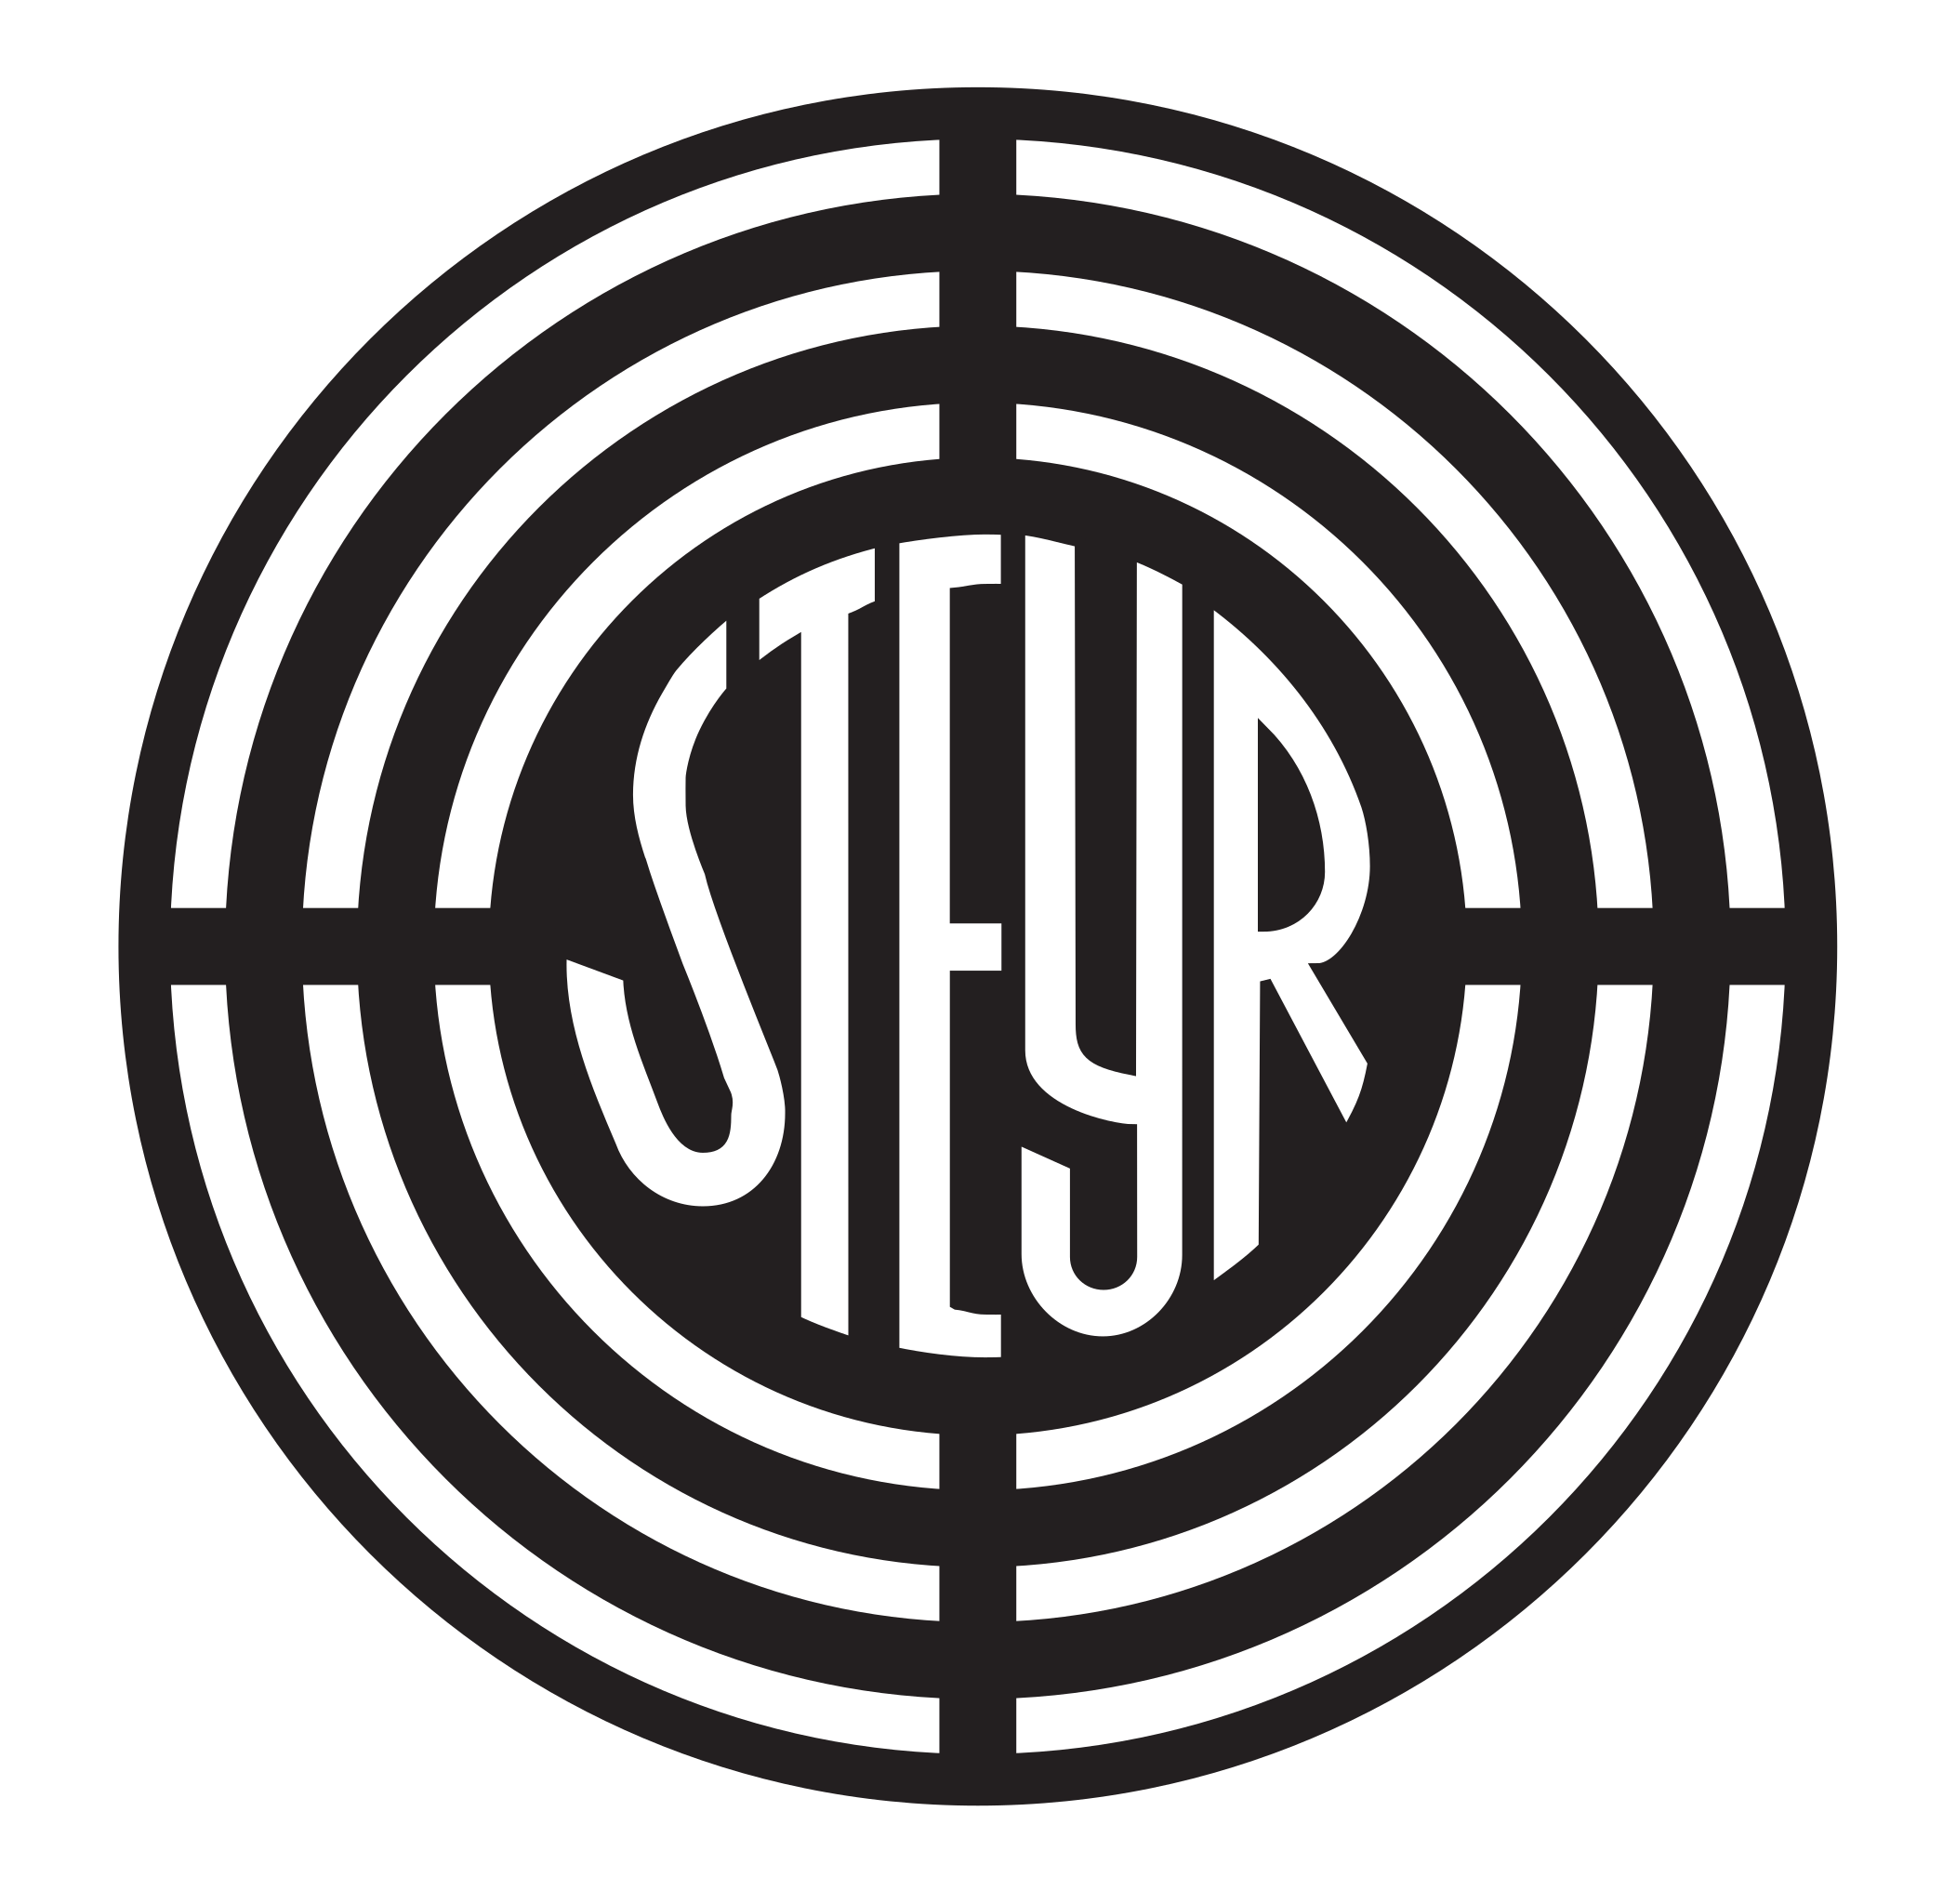 Steyr_logo.svg